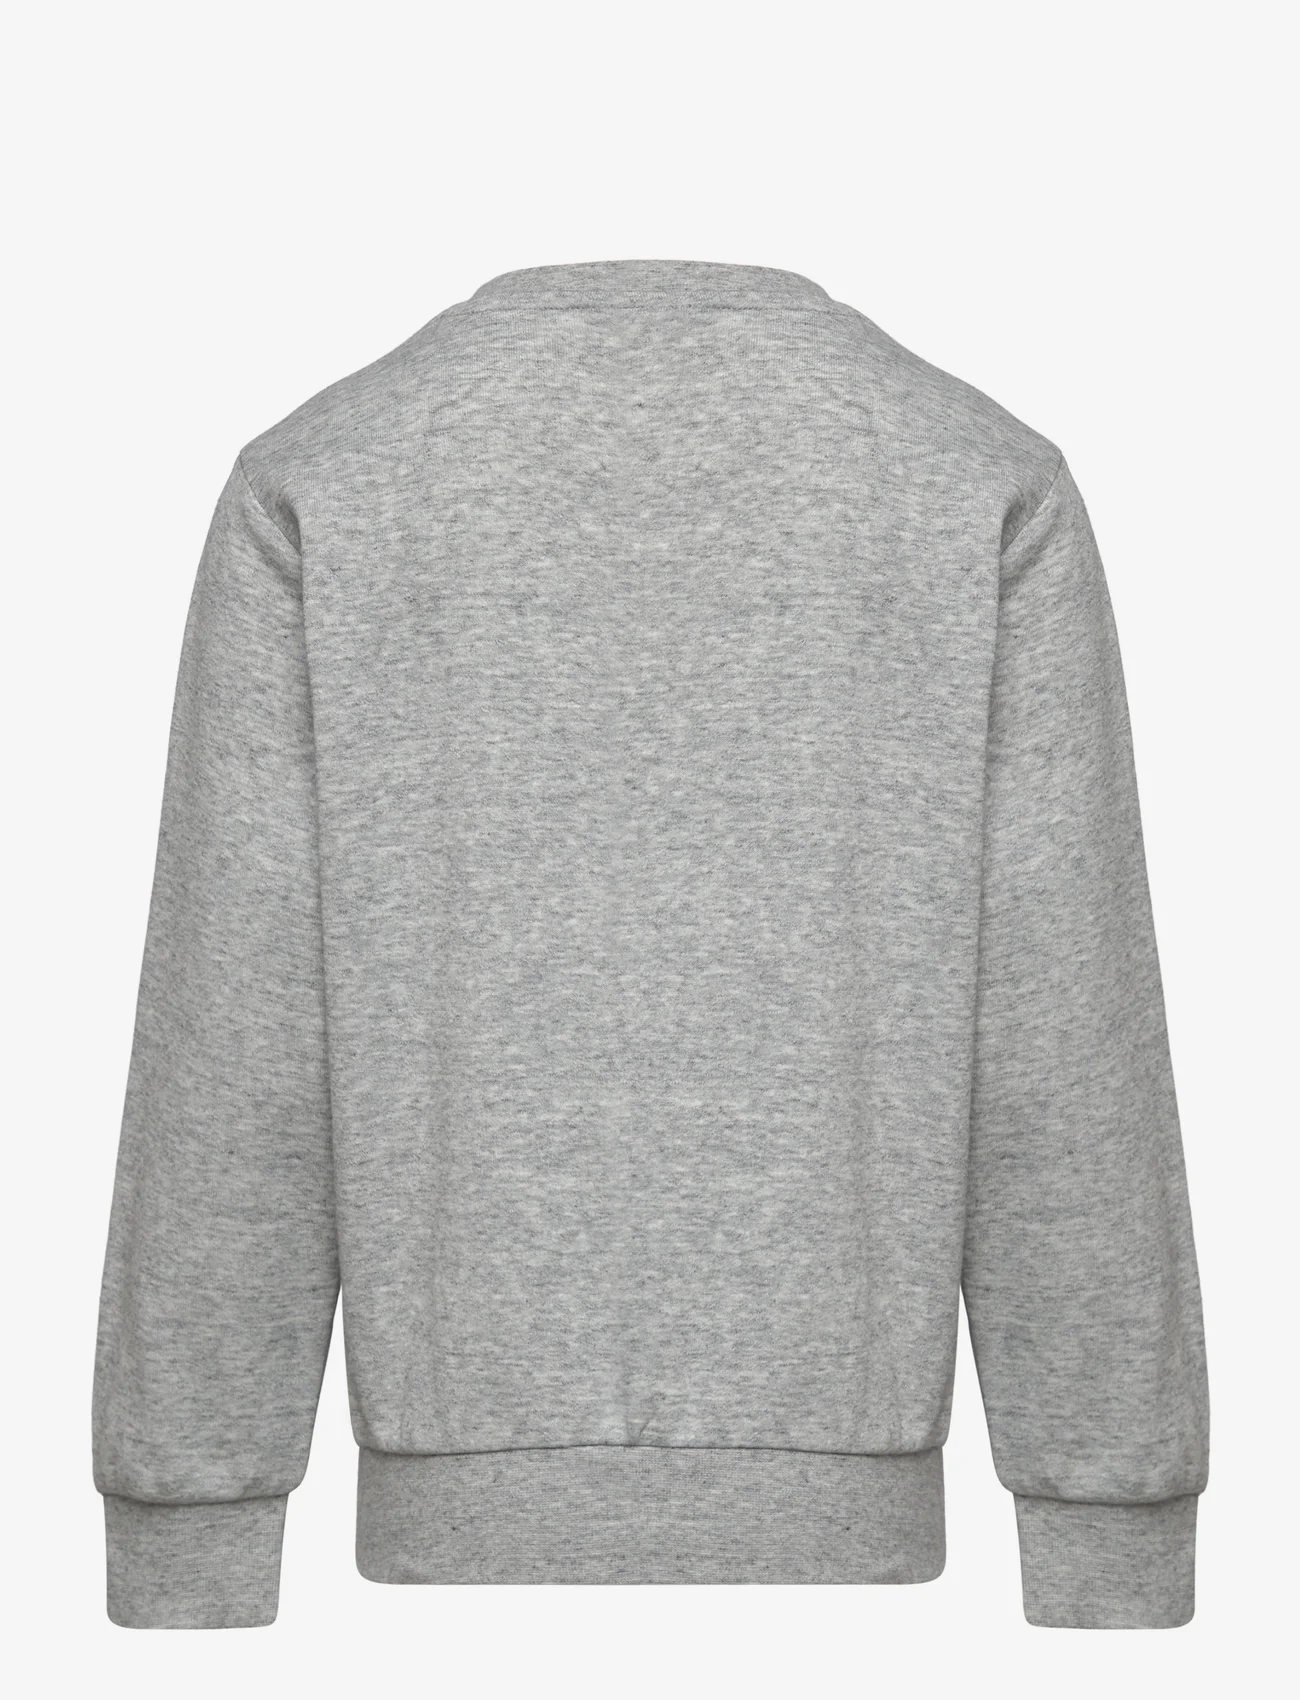 Champion - Crewneck Sweatshirt - die niedrigsten preise - new oxford grey melange - 1